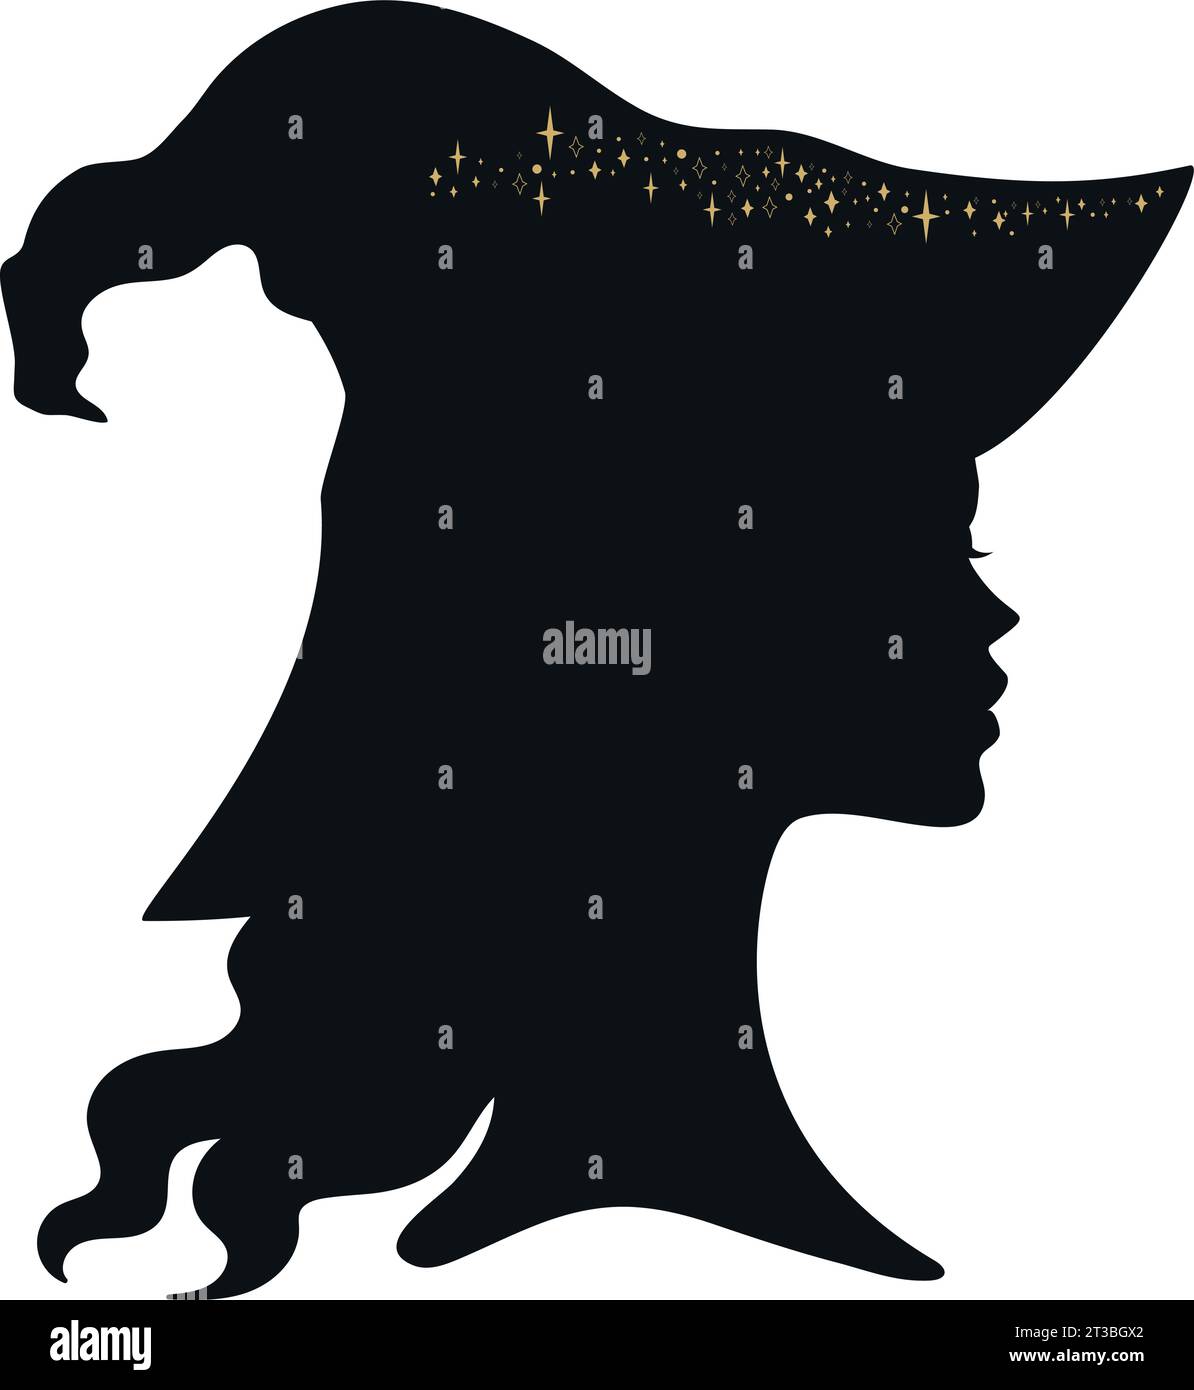 Junge Hexe in Hütsilhouette mit Sternen. Vektorillustration isoliert auf weißem Hintergrund Stock Vektor